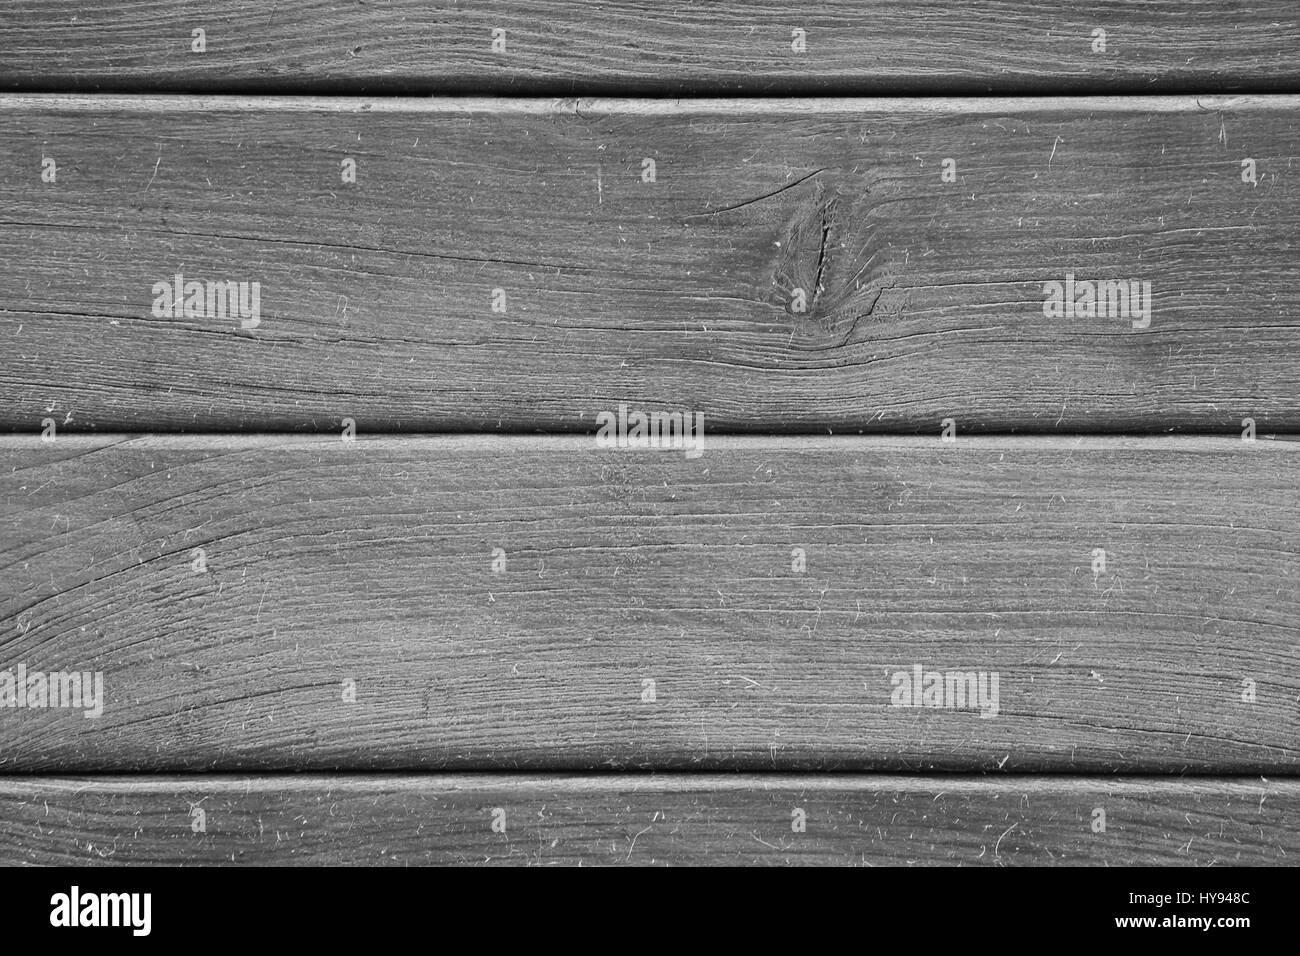 Hintergrund Holz Holzbrett schwarz-weiß grau Stock Photo